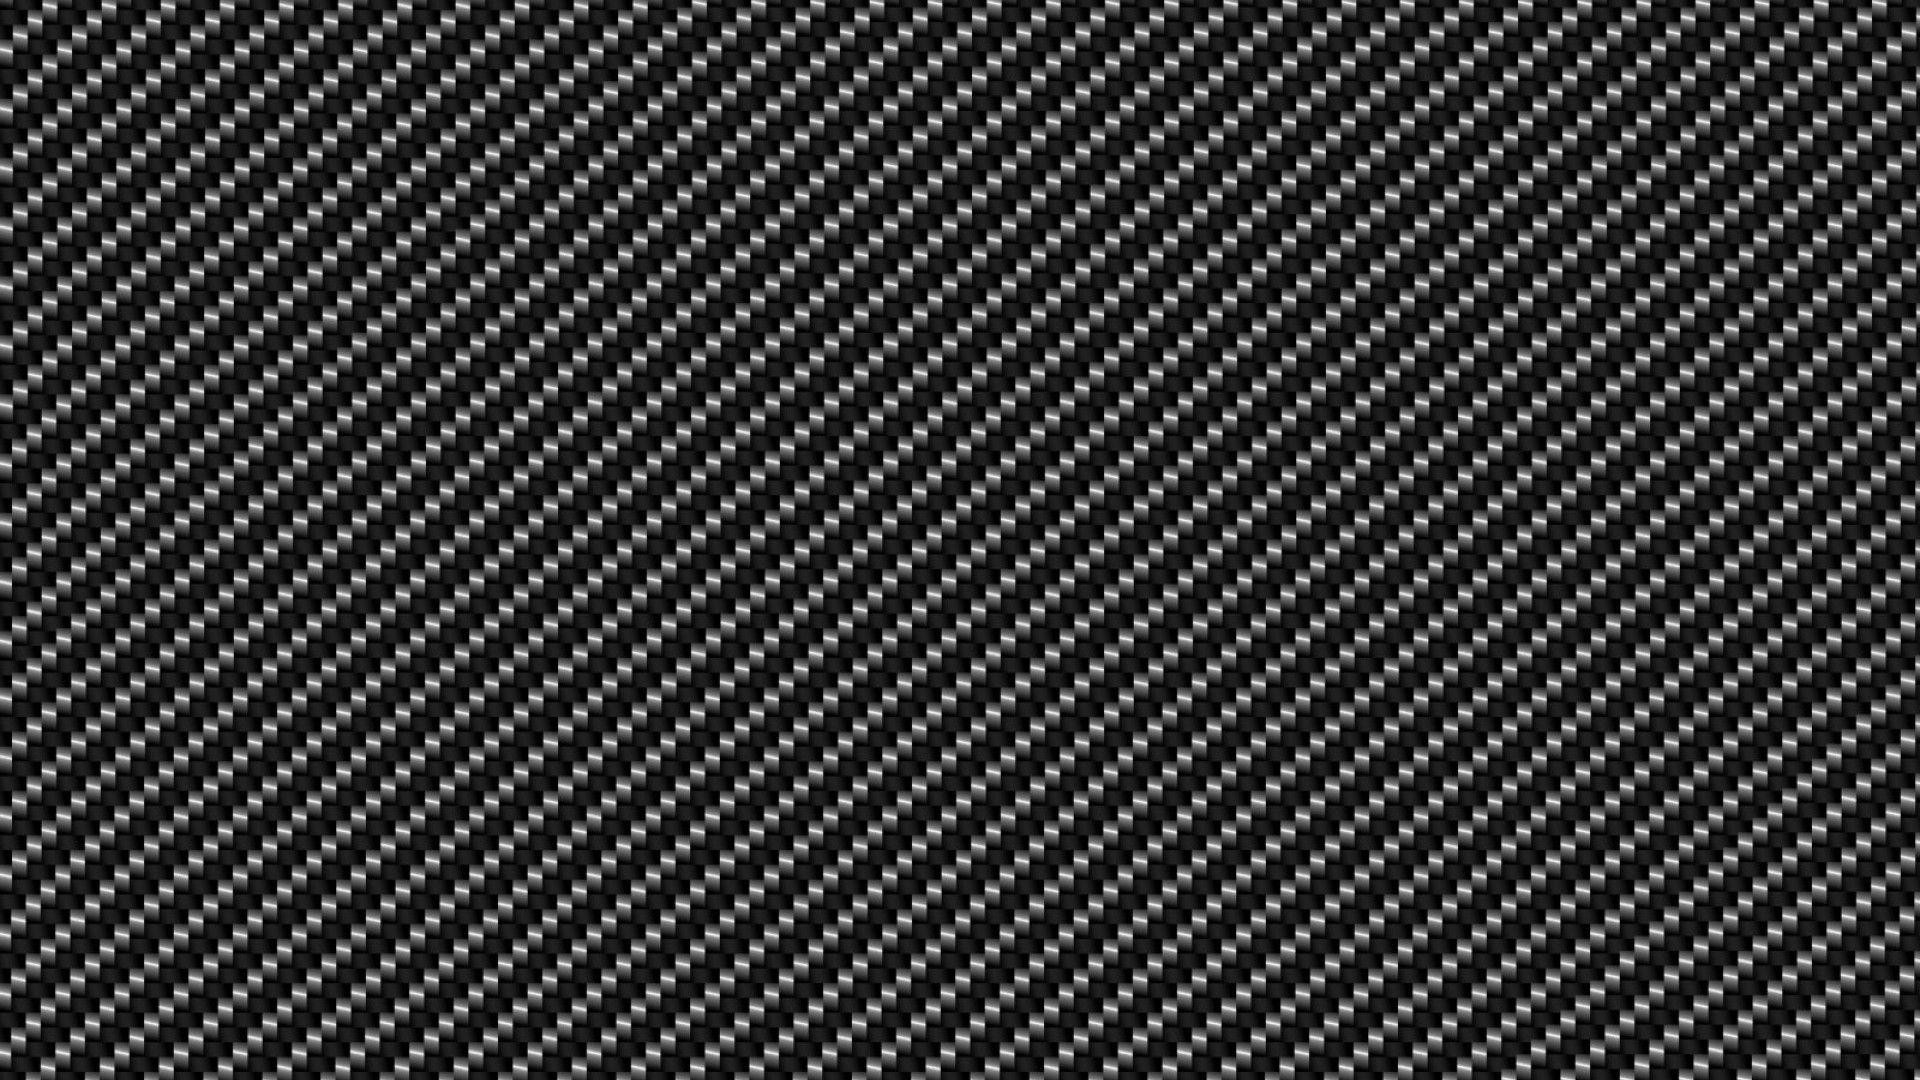 Carbon Fiber Wallpaper Wallpaper Wide Hd Hd Wallpapers 1920x1080